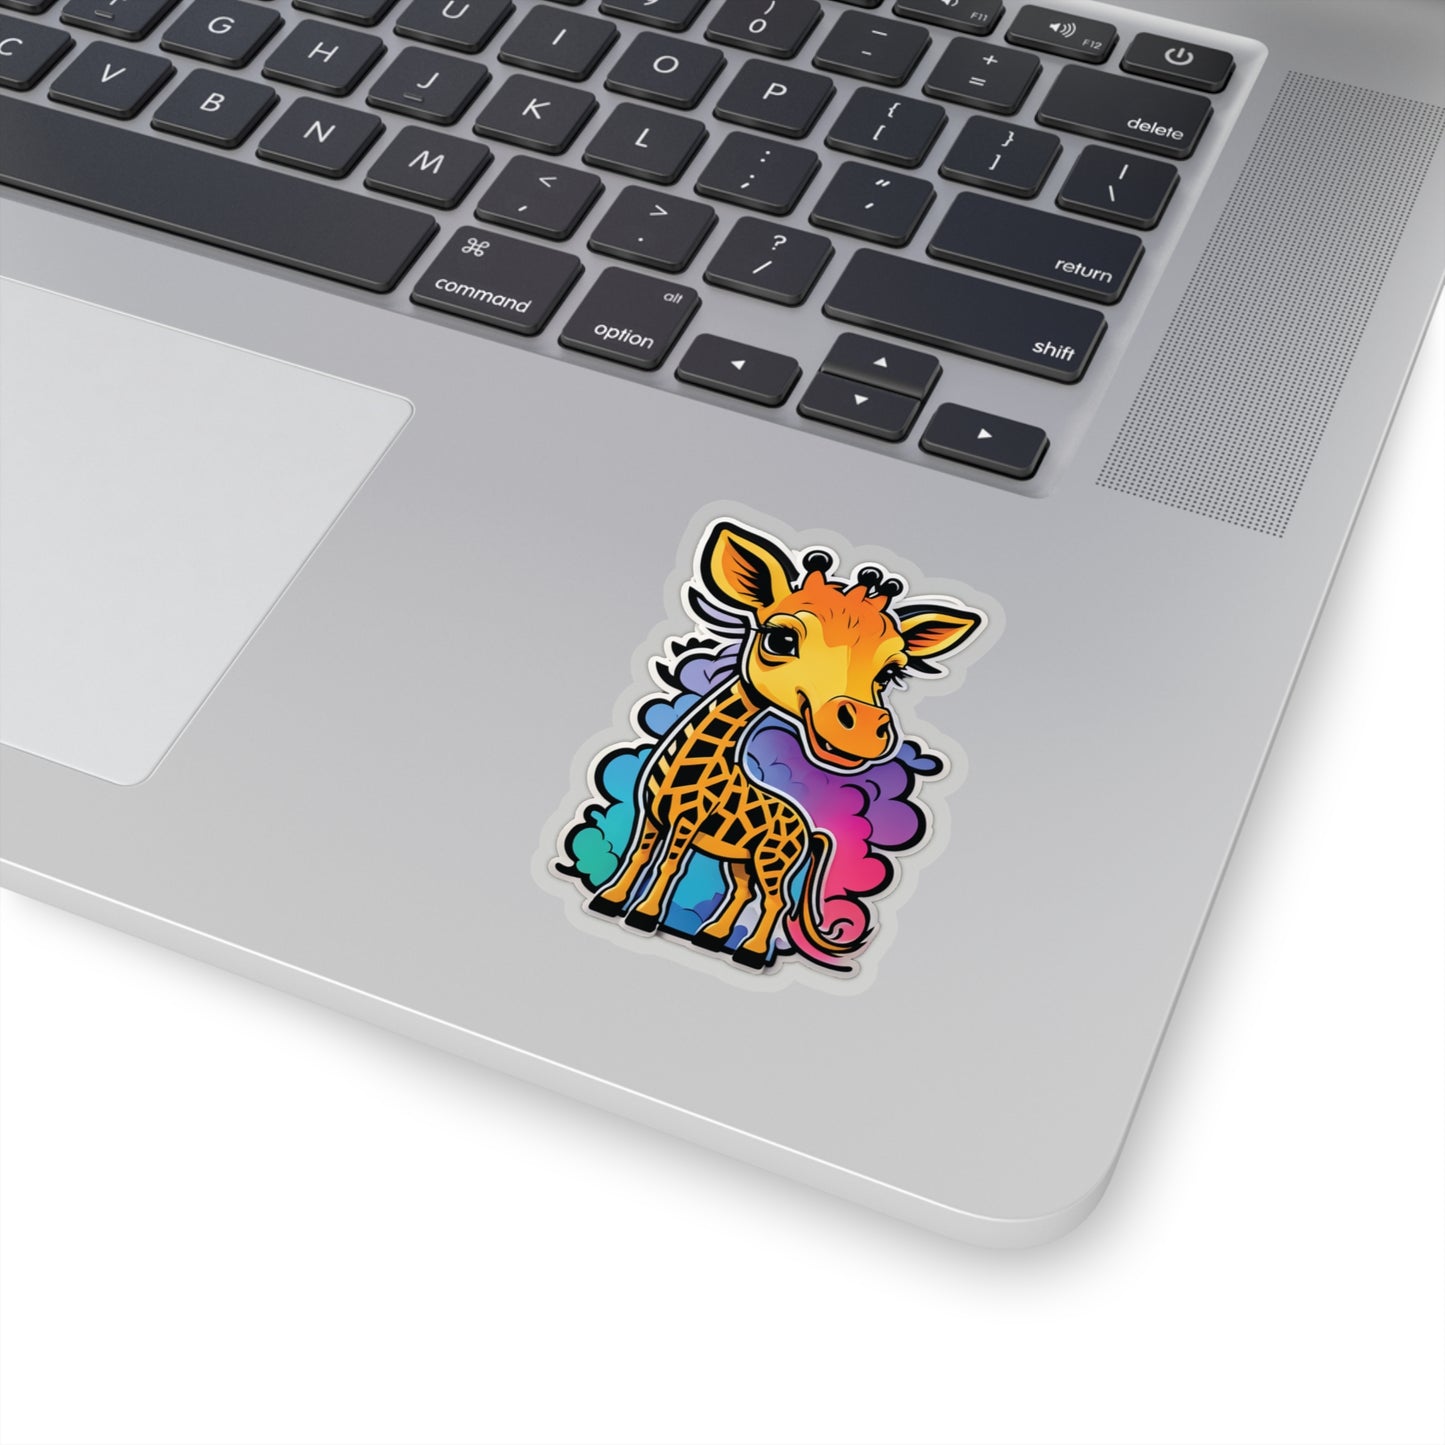 Cute Chibi Giraffe Sticker Bright Colors | Fun Stickers | Happy Stickers | Must Have Stickers | Laptop Stickers | Best Stickers | Gift Idea